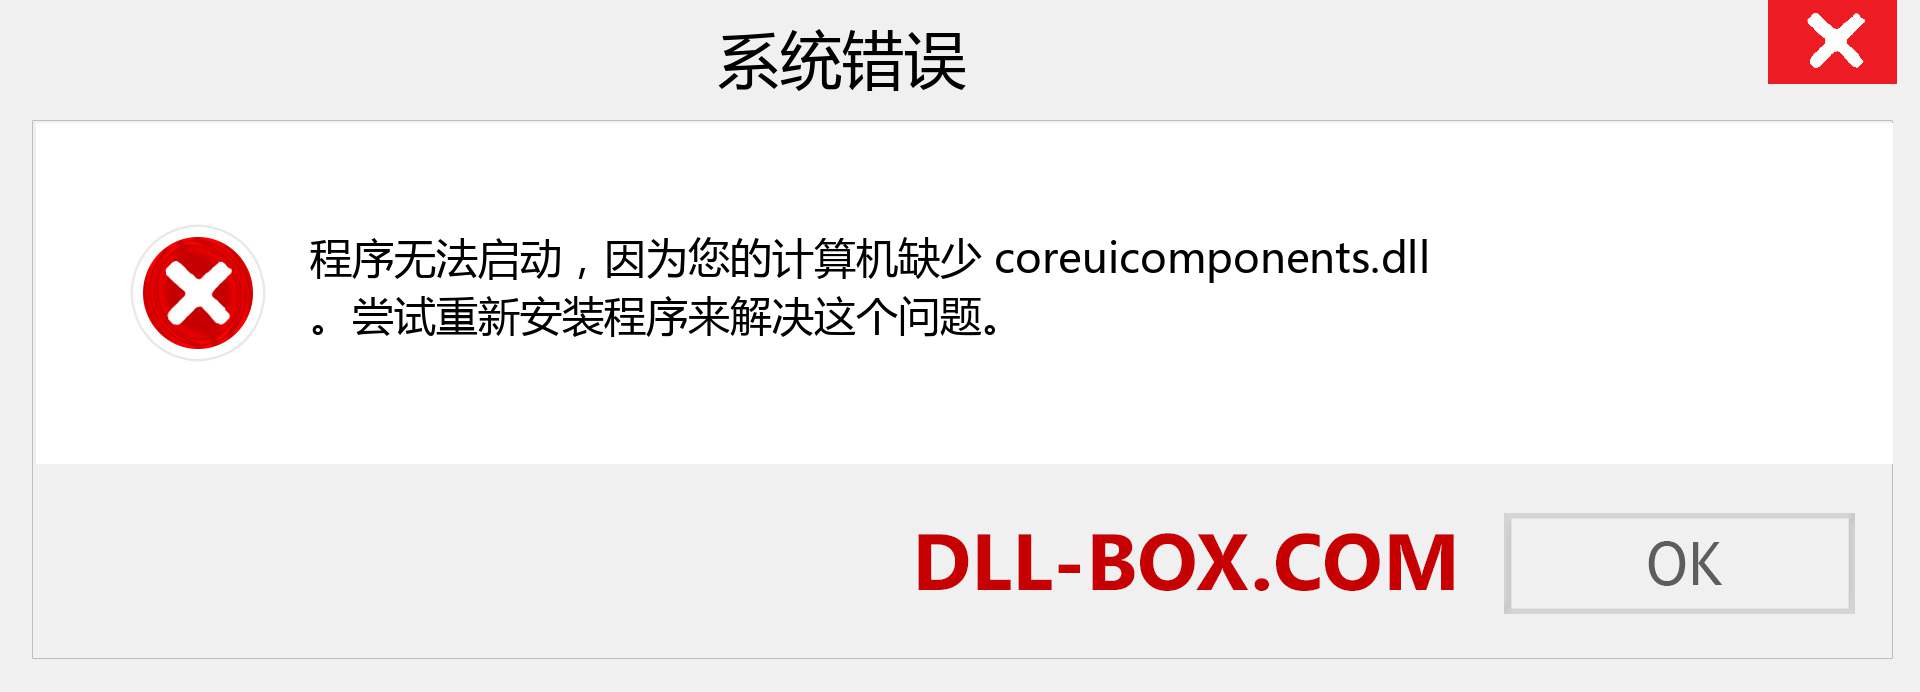 coreuicomponents.dll 文件丢失？。 适用于 Windows 7、8、10 的下载 - 修复 Windows、照片、图像上的 coreuicomponents dll 丢失错误